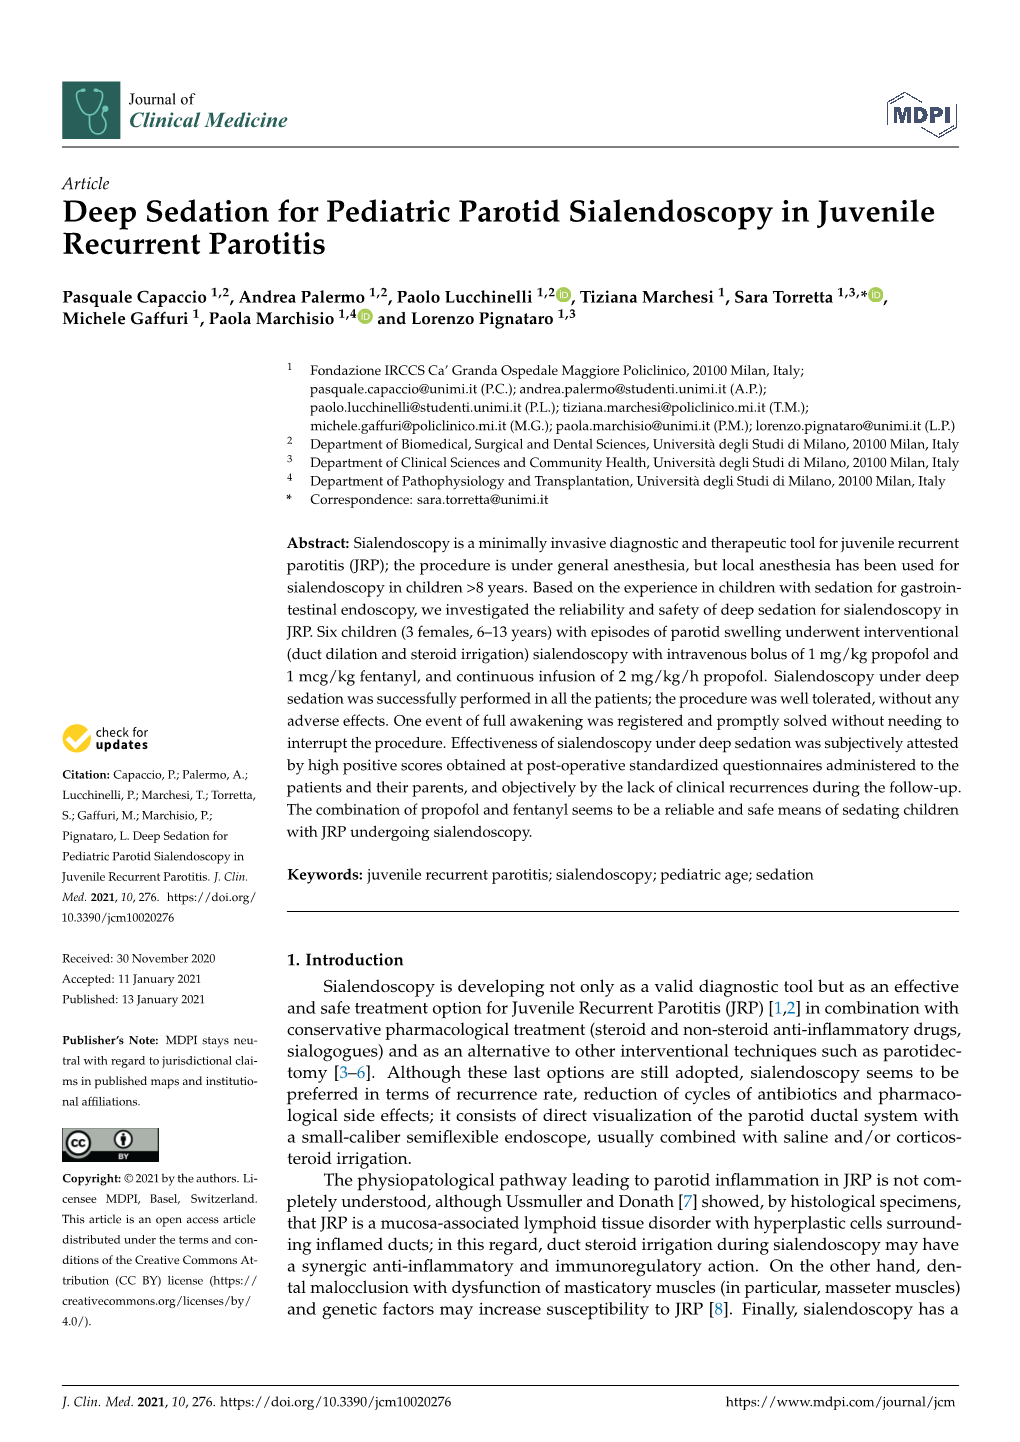 Deep Sedation for Pediatric Parotid Sialendoscopy in Juvenile Recurrent Parotitis